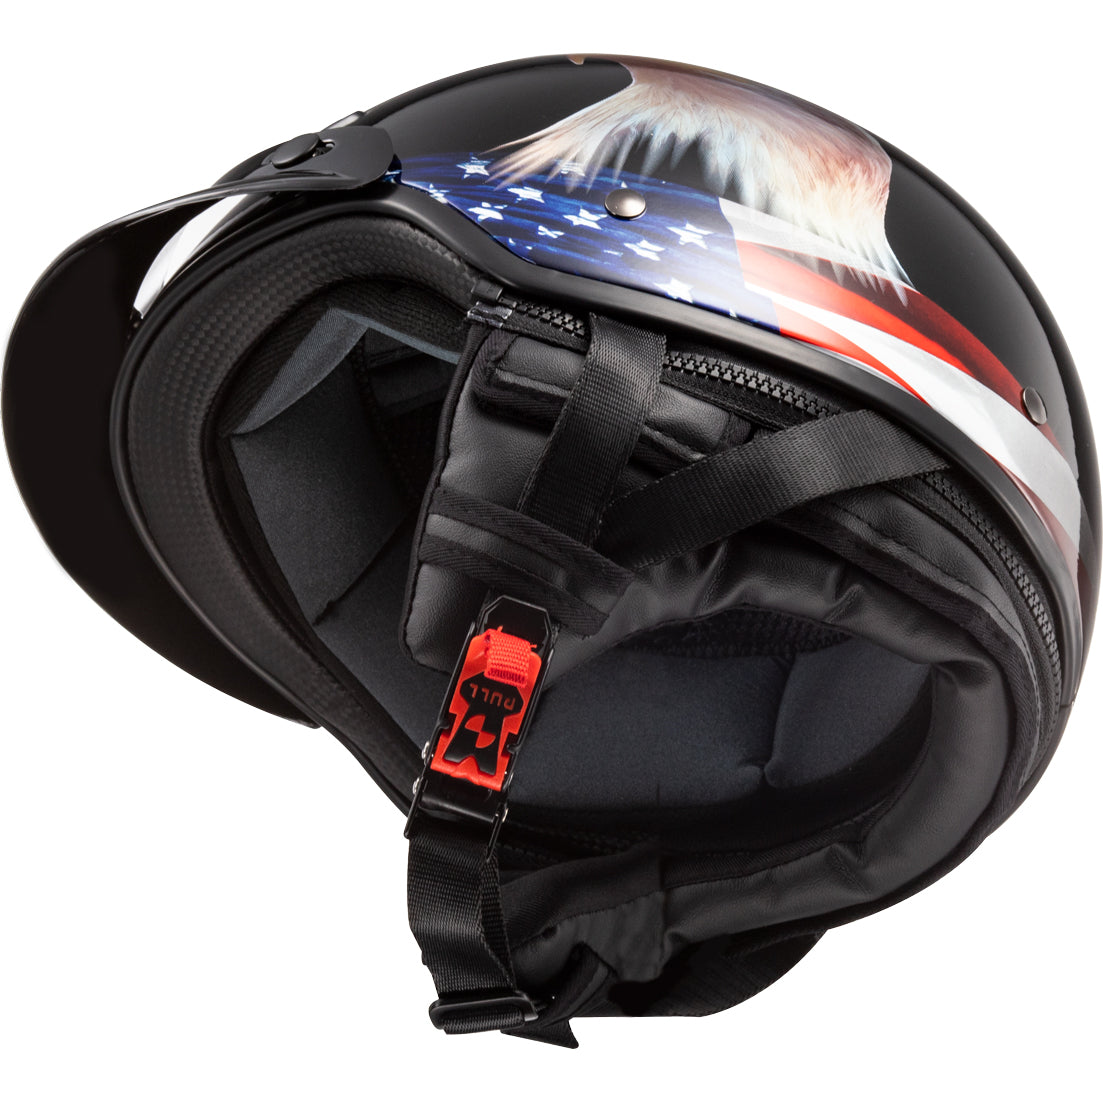 LS2 Helmets Bagger Murica Motorcycle Half Helmet